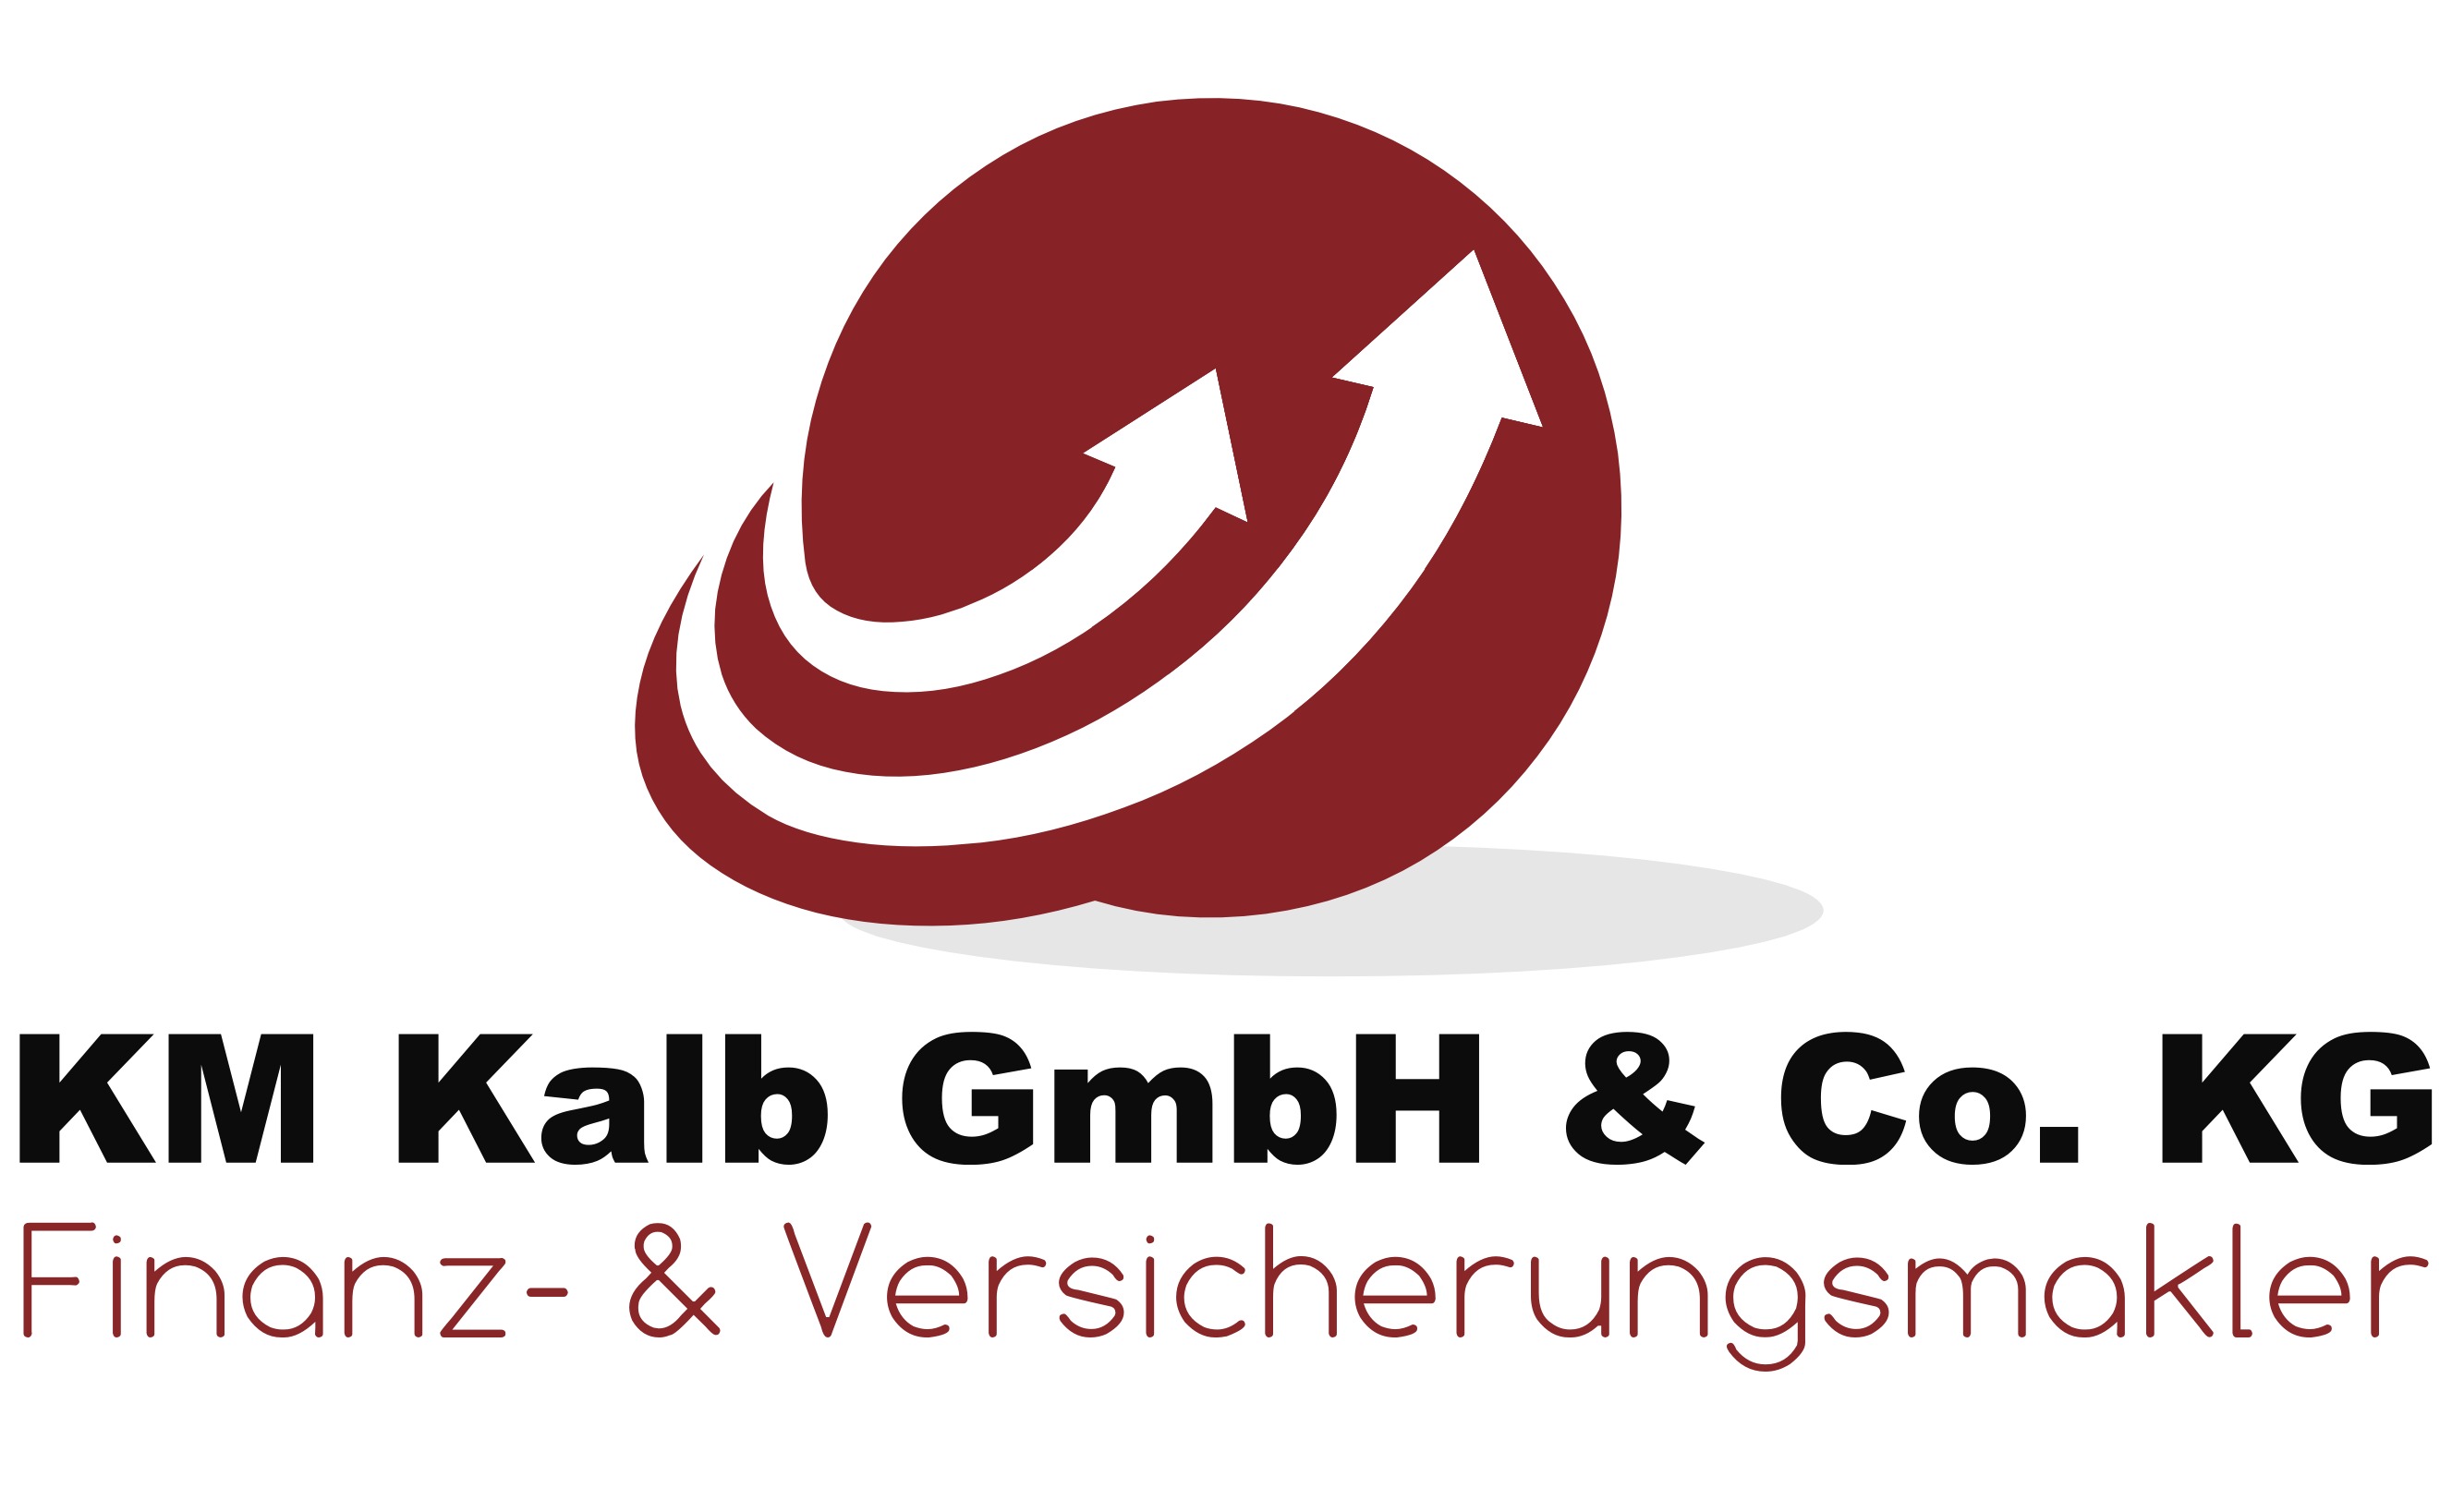  KM Kalb GmbH & Co. KG